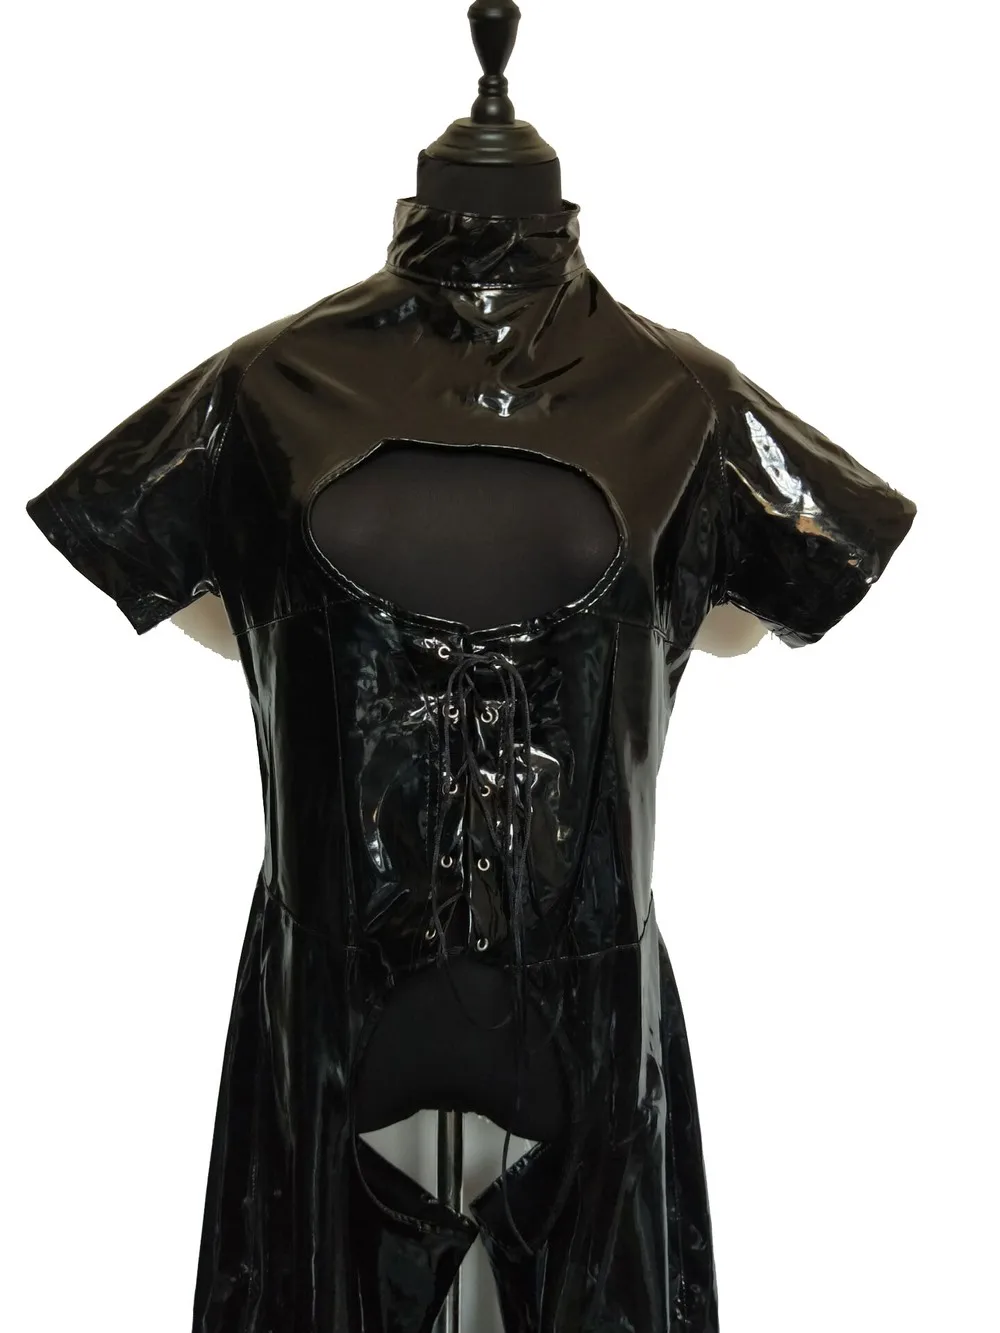 Сексуальный женский Облегающий комбинезон из искусственной кожи в стиле фетиш черный комбинезон из ПВХ с открытой промежностью порно боди ... от AliExpress WW